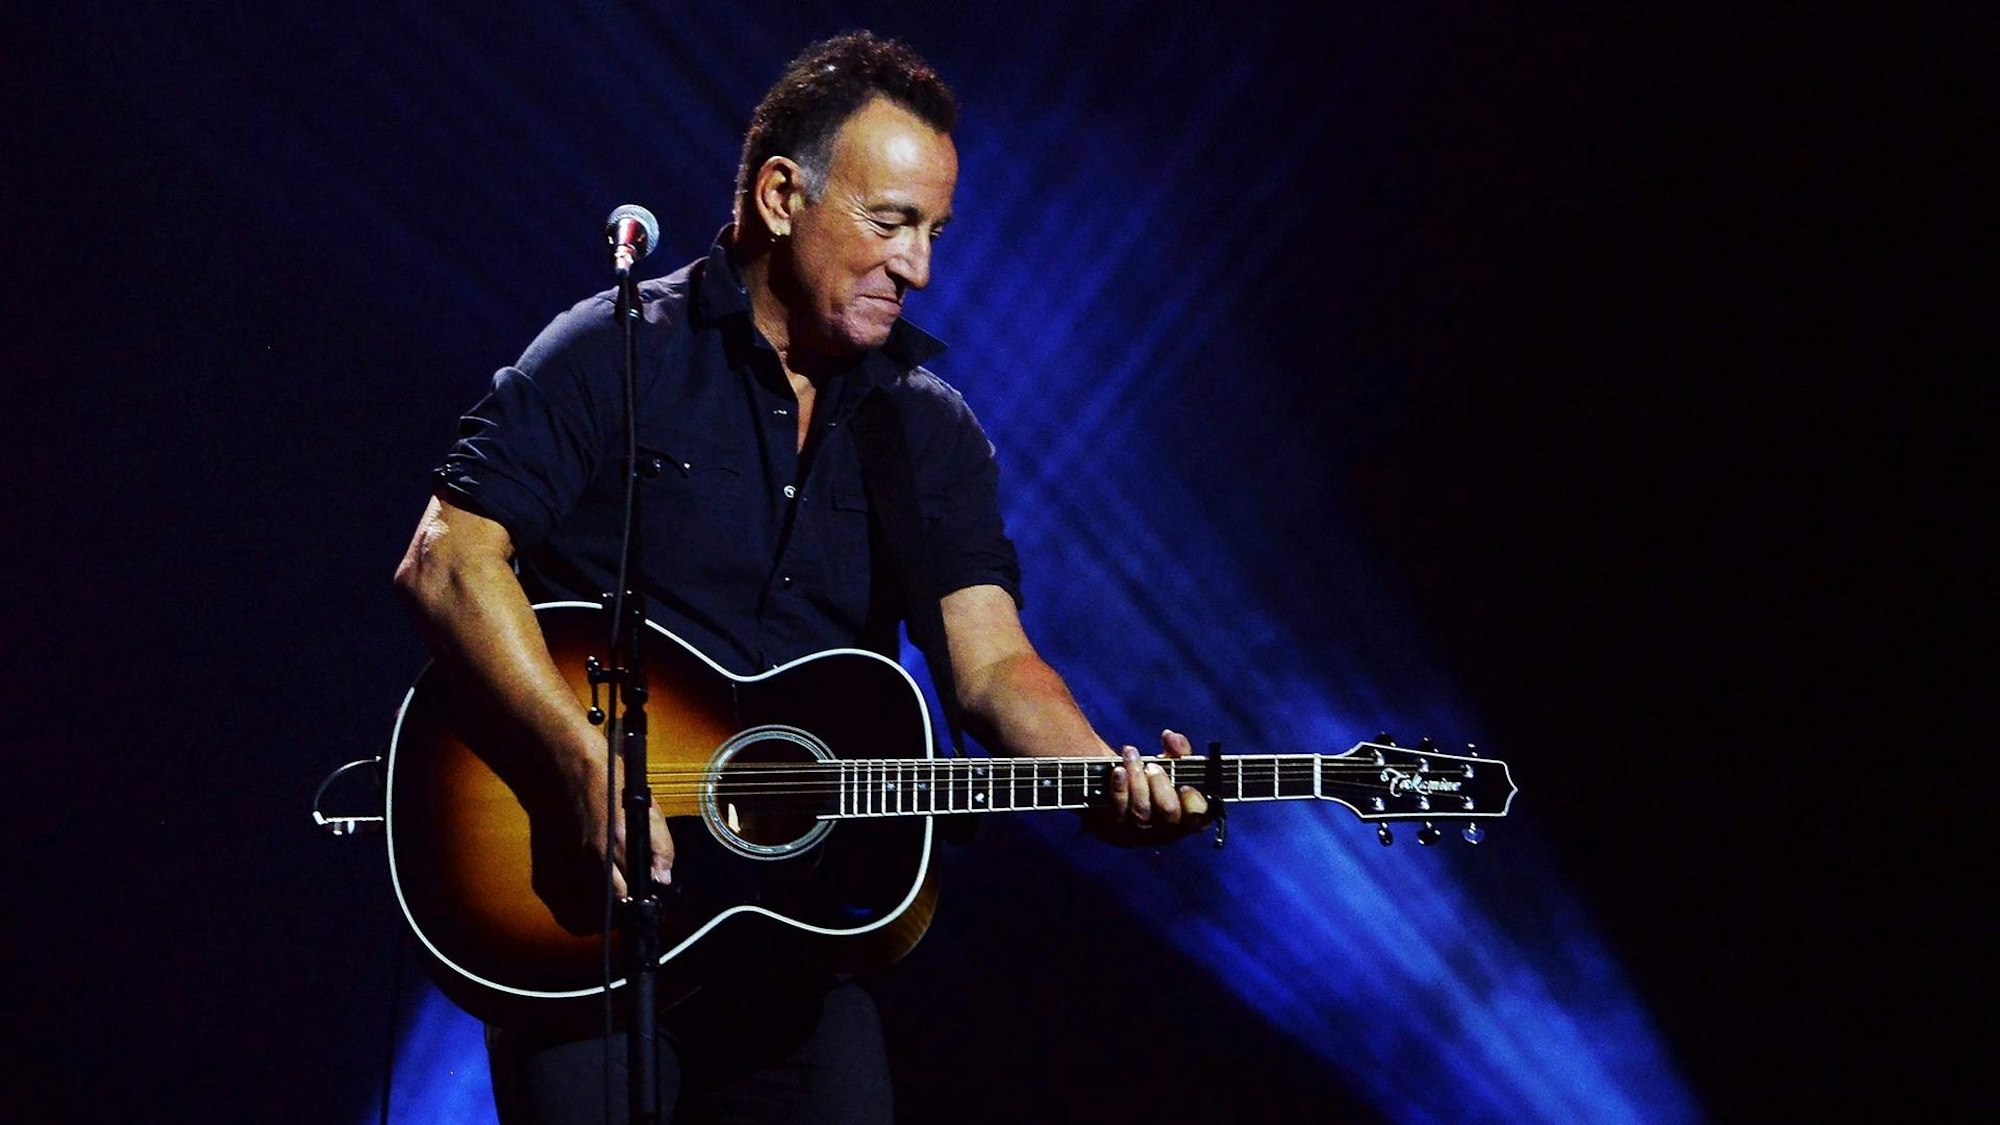 Bruce Springsteen bei einem Auftritt mit Gitarre.